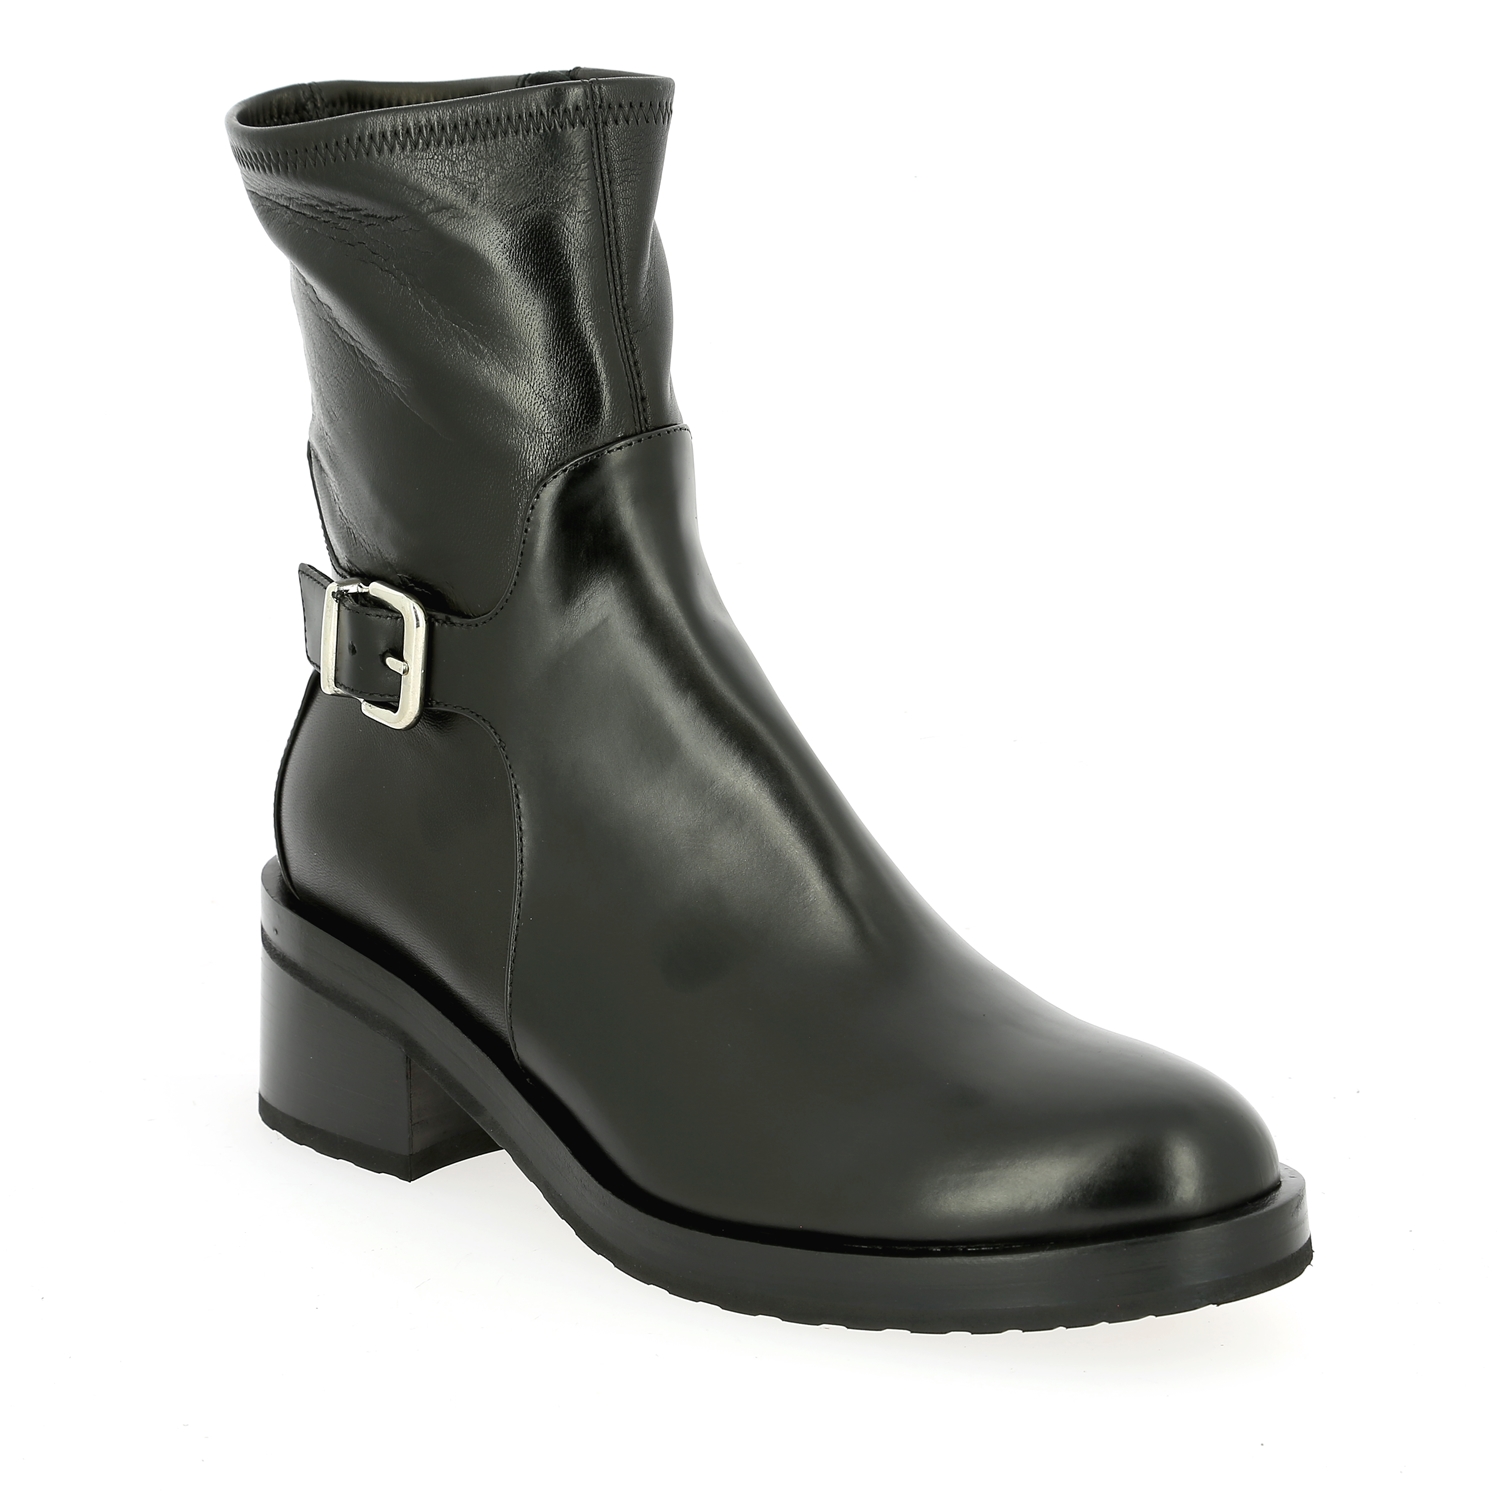 Trumans Boots noir